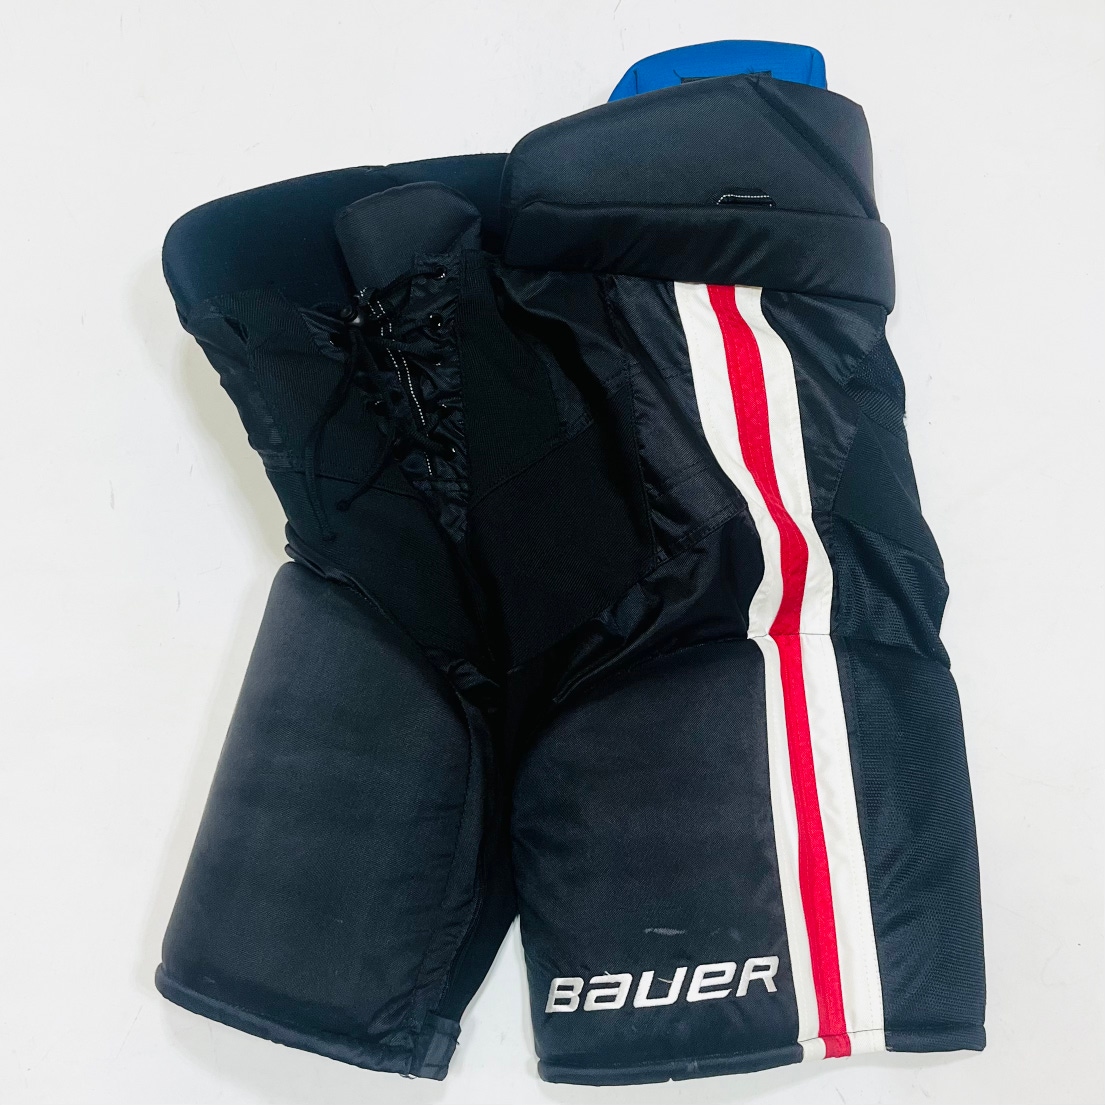 NHL Pro Stock Bauer Hockey Pants-Large + 1"